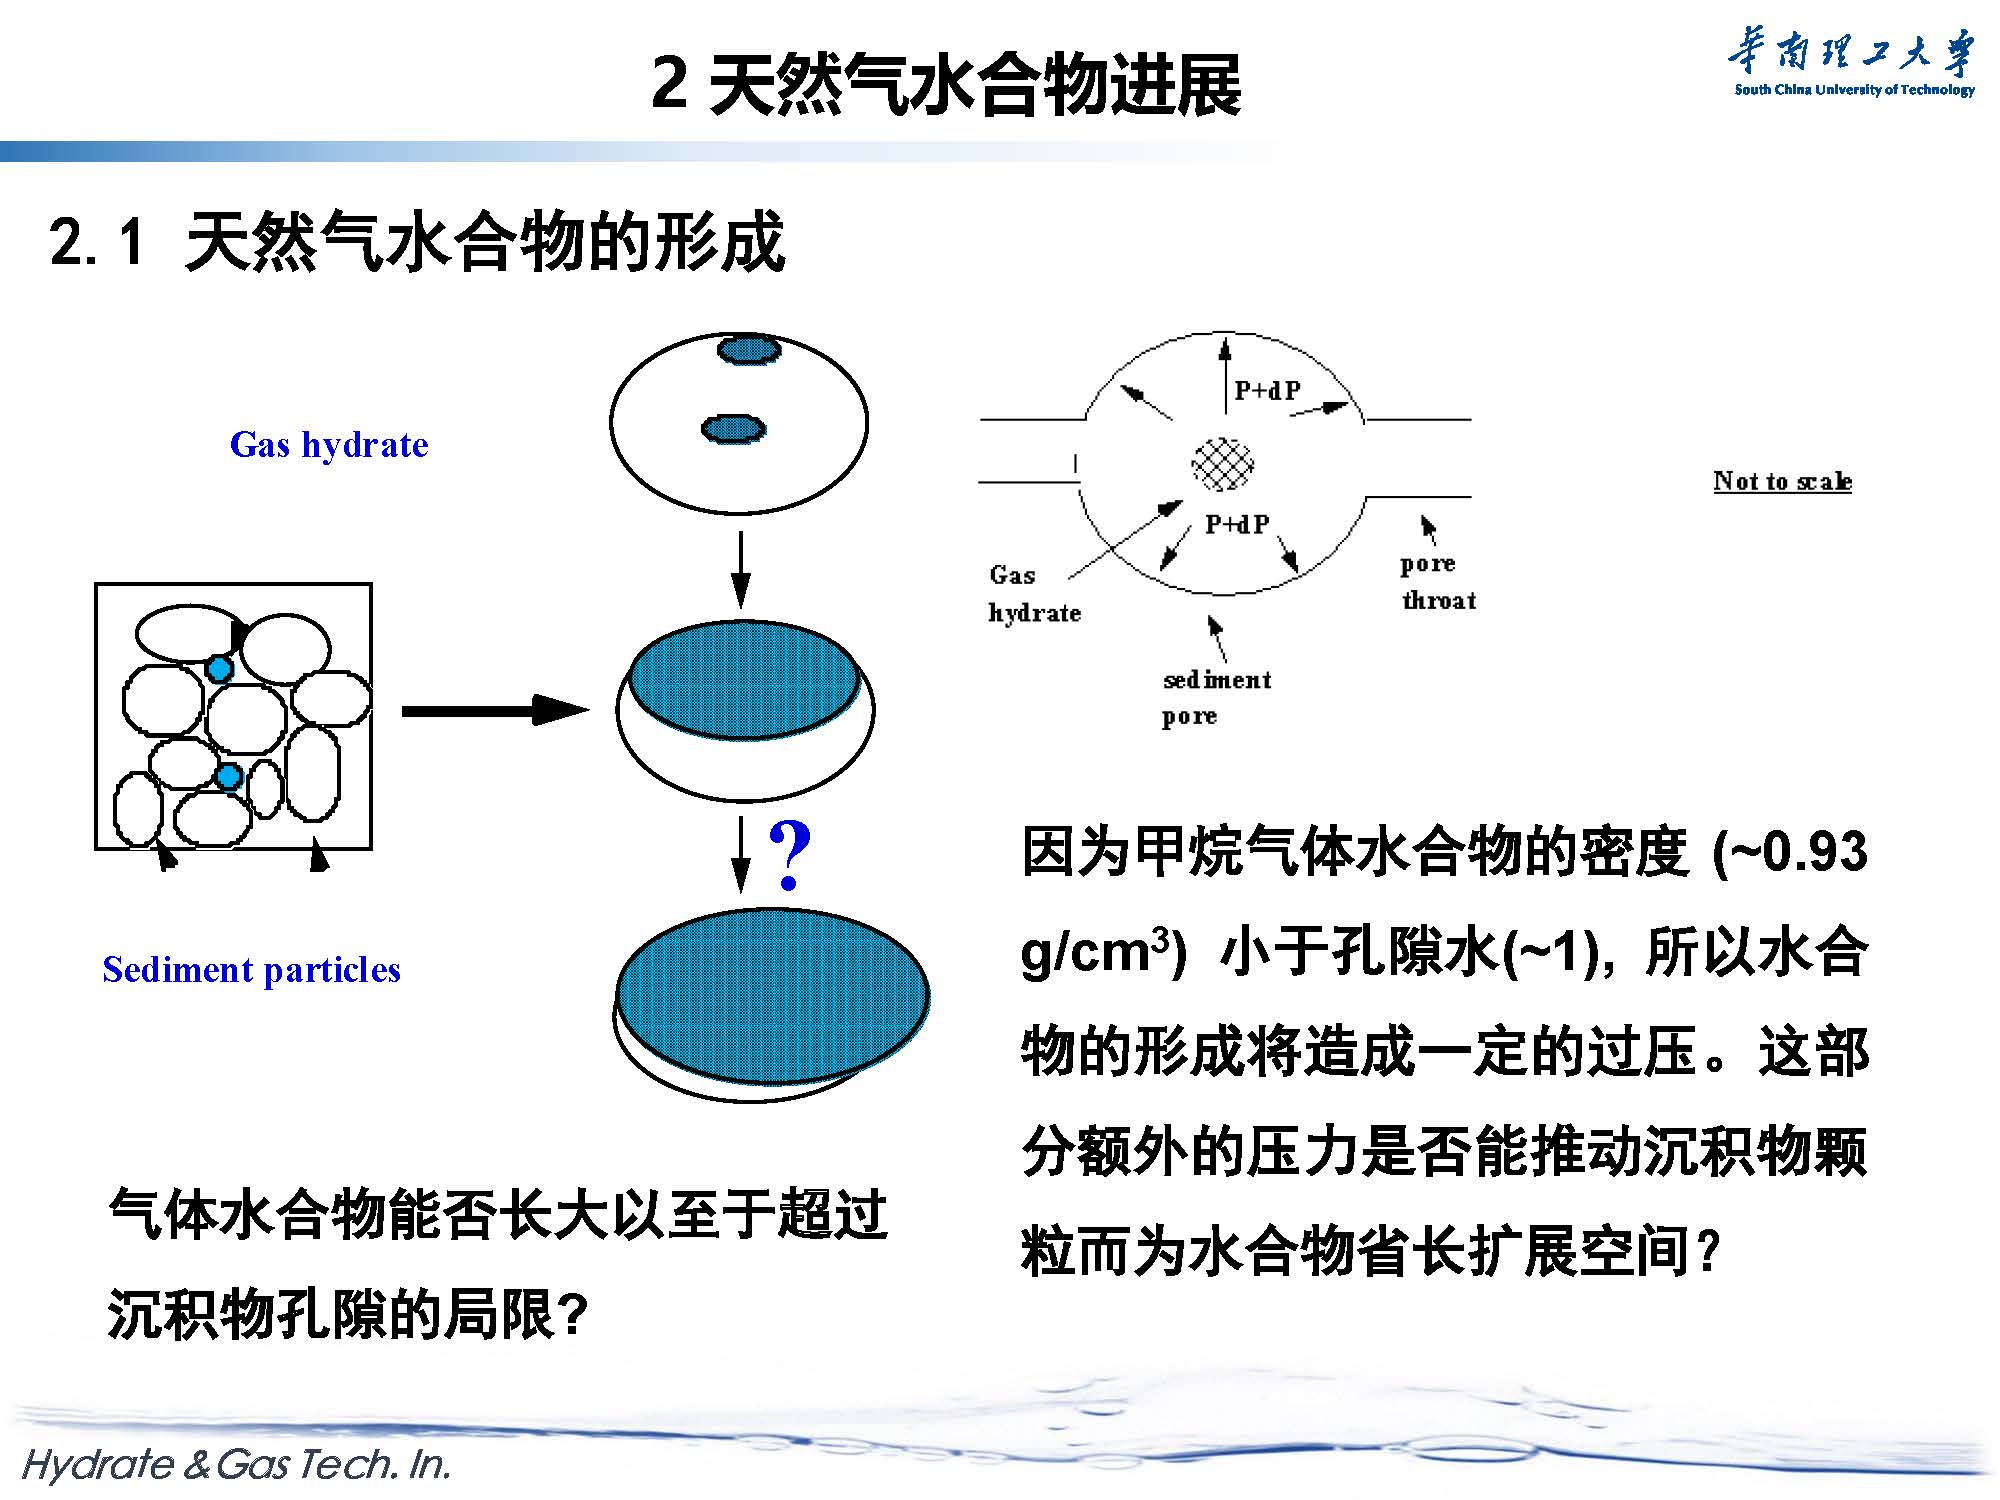 天然气水合物开采与新材料探索-forGJX_页面_07.jpg